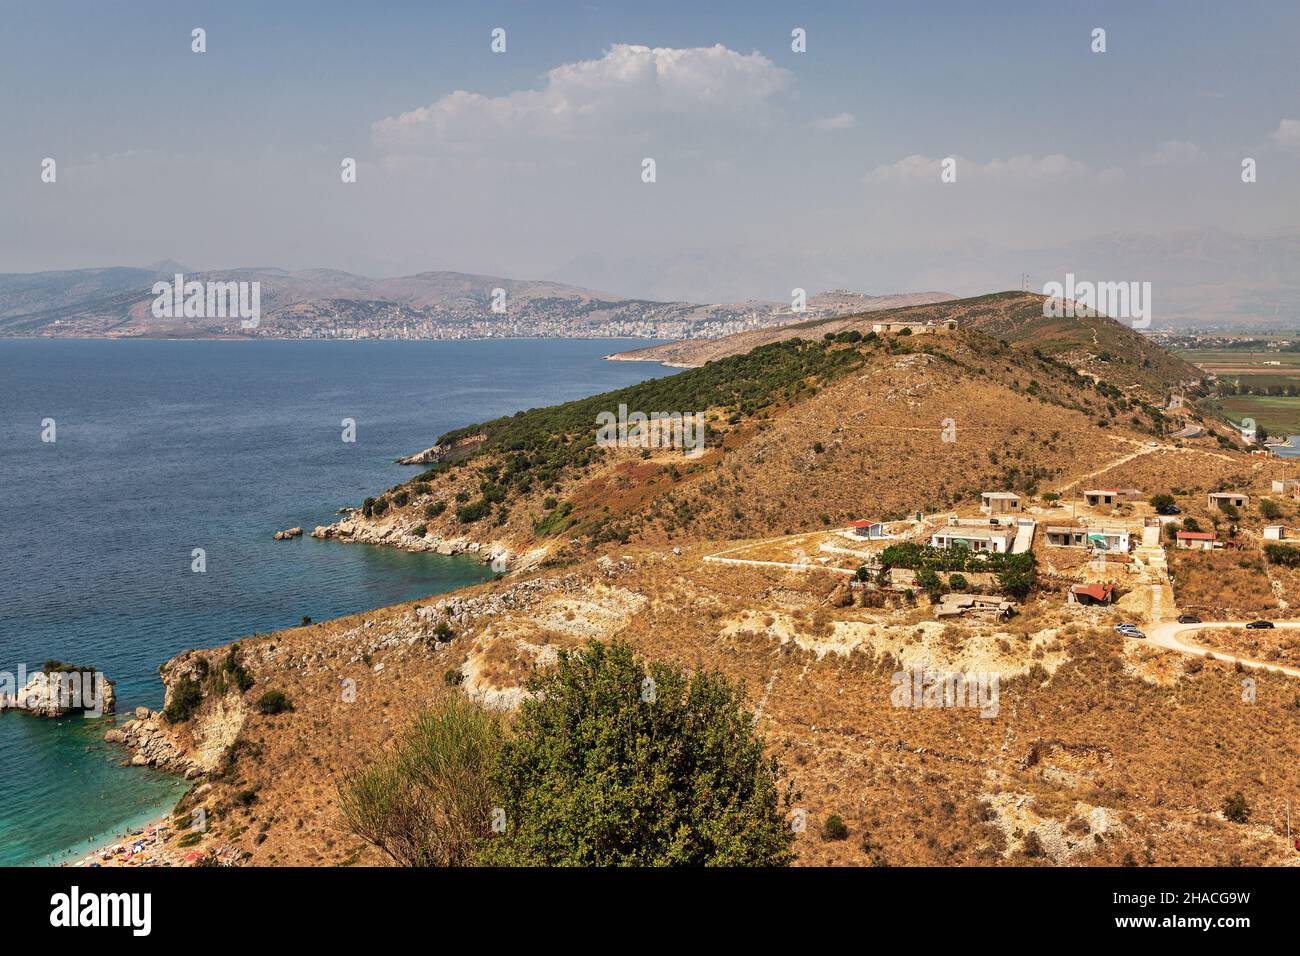 Landschaft in Südalbanien mit Militärfestung auf dem Hügel in der Ferne Stockfoto